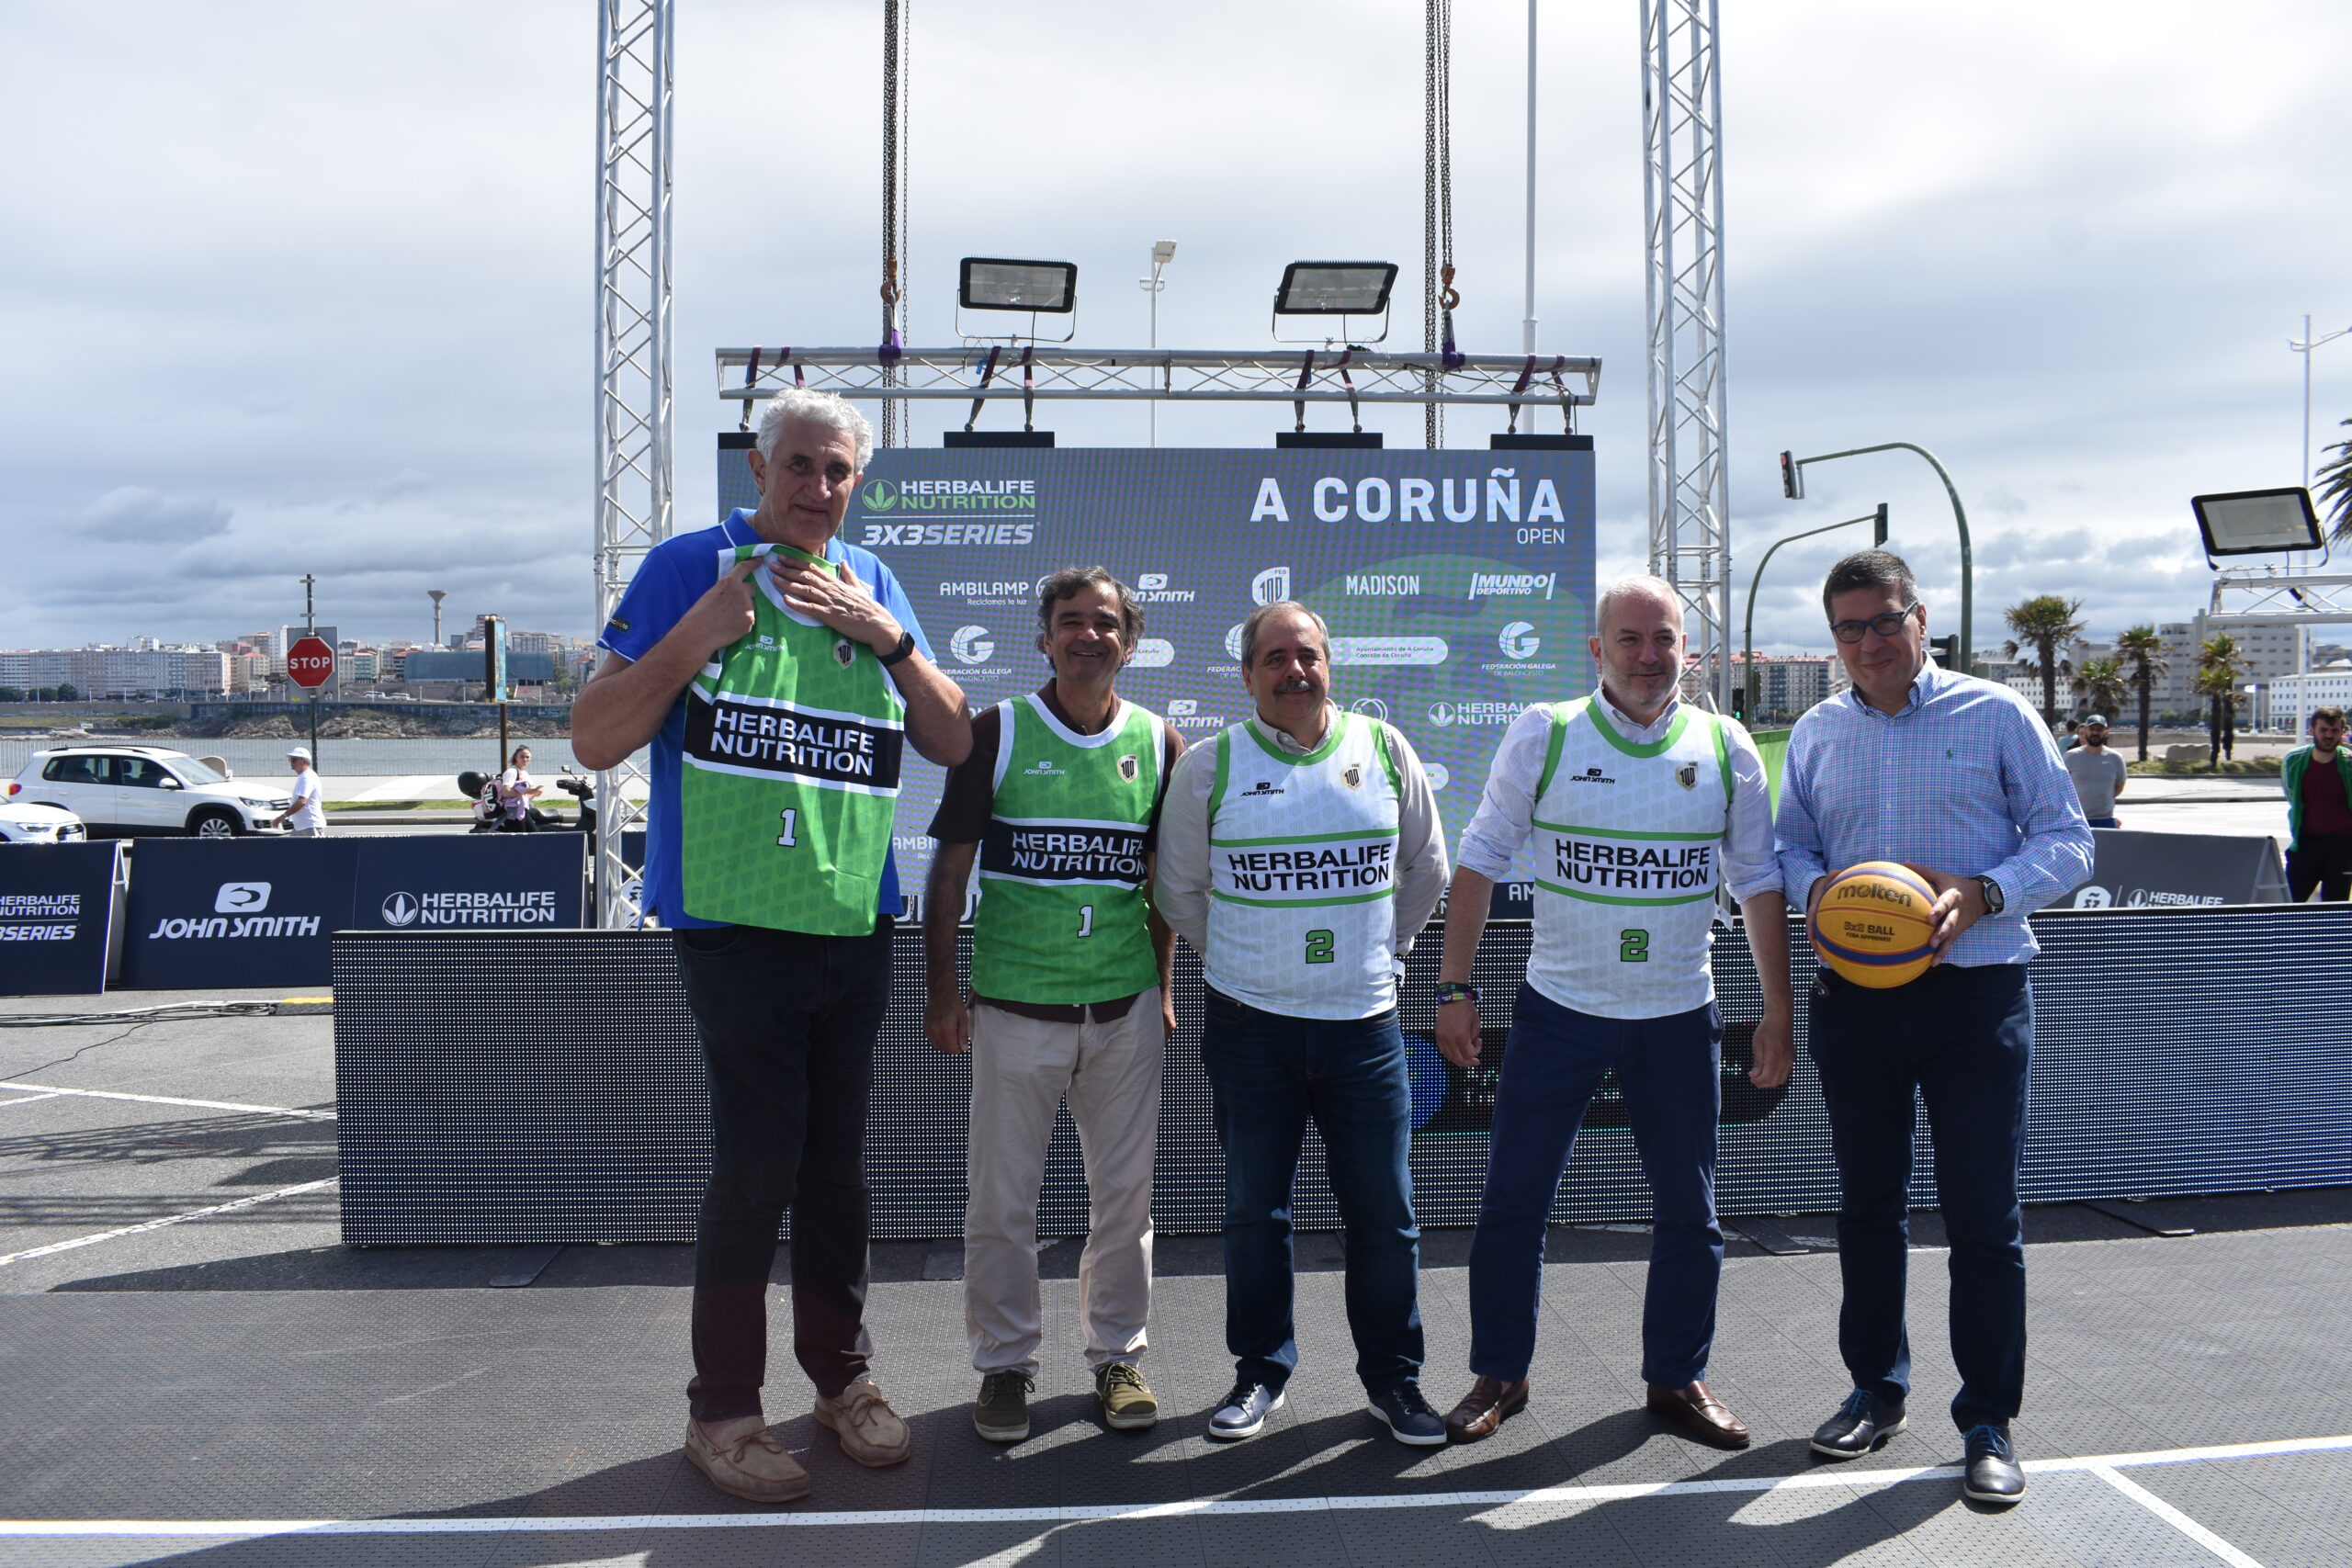 Presentado el A Coruña Open, que se disputará el 14 y el 15 de julio en la explanada de Riazor